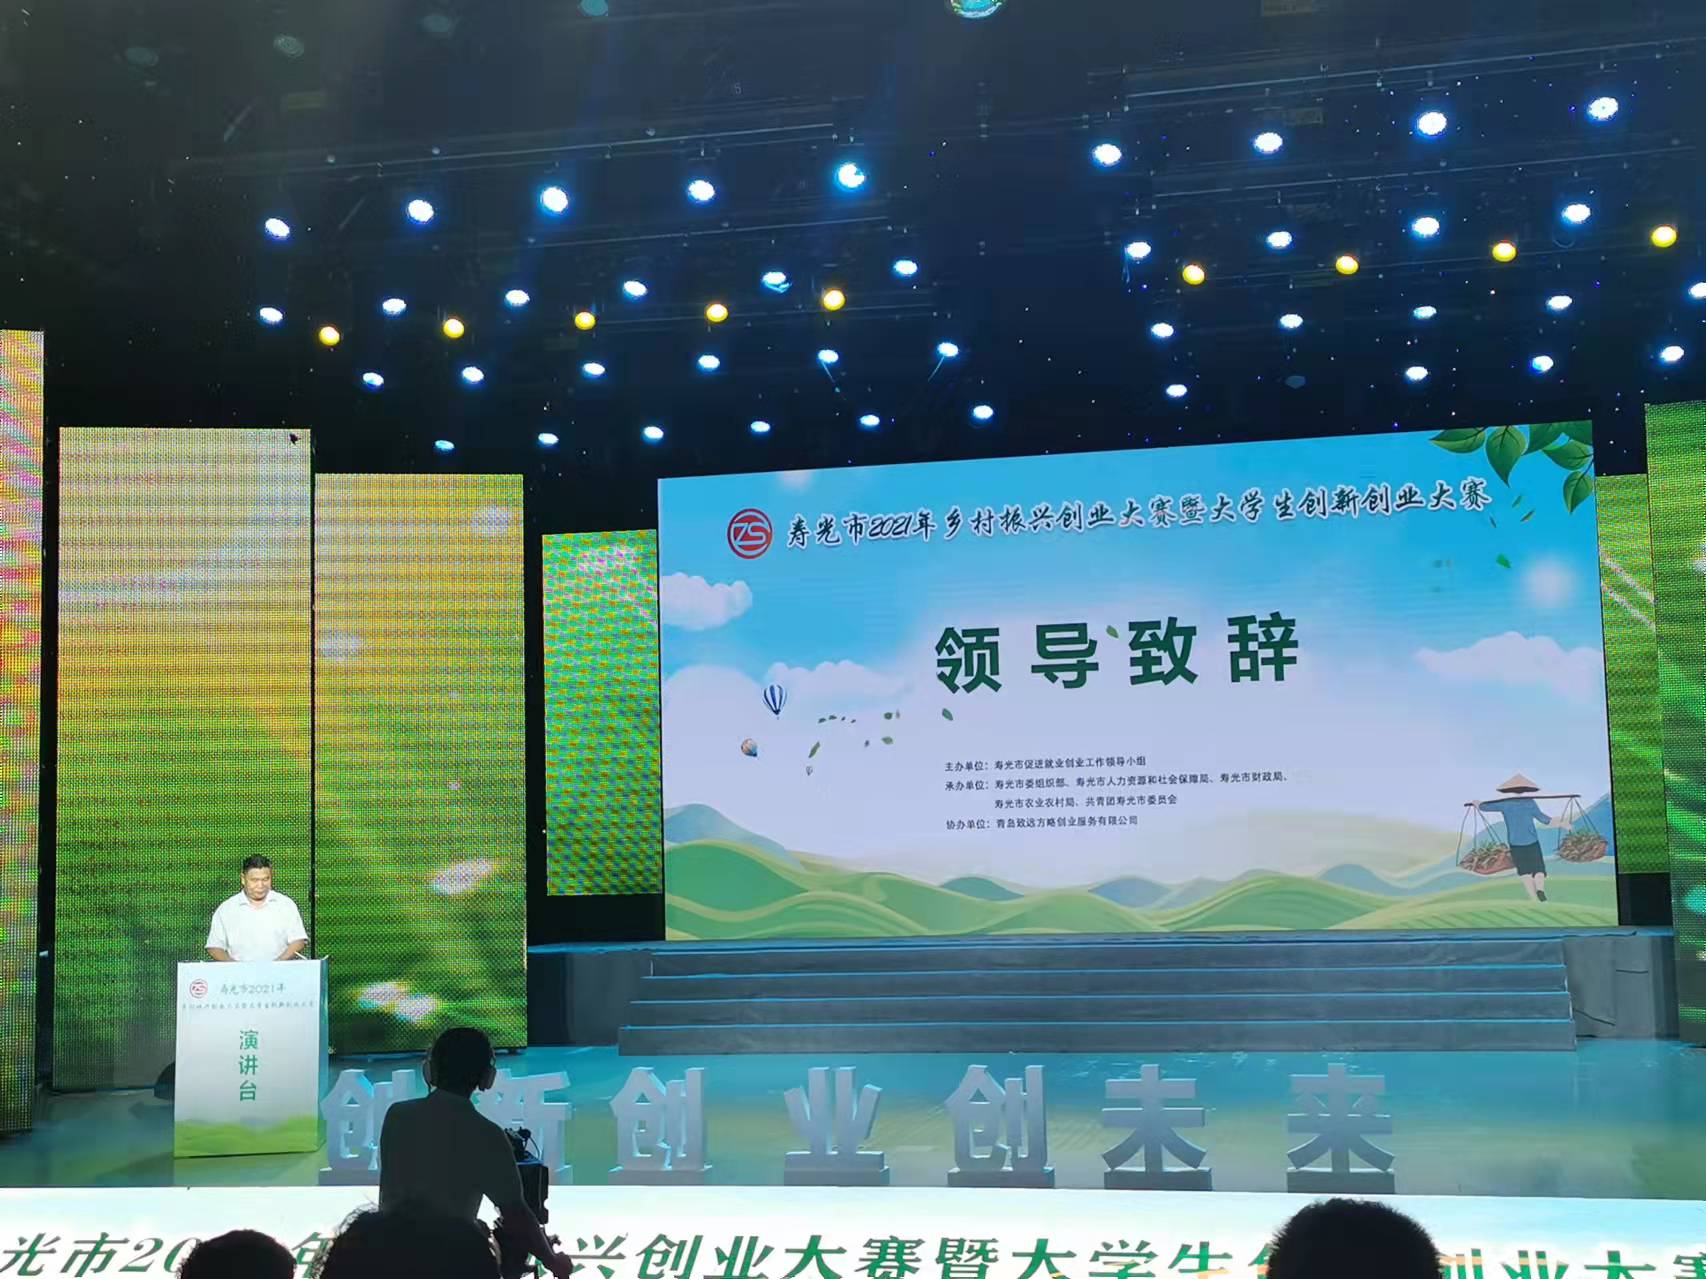 瑞航农科参加寿光市创新创业大赛获三等奖并与北京创投签约获投资资金